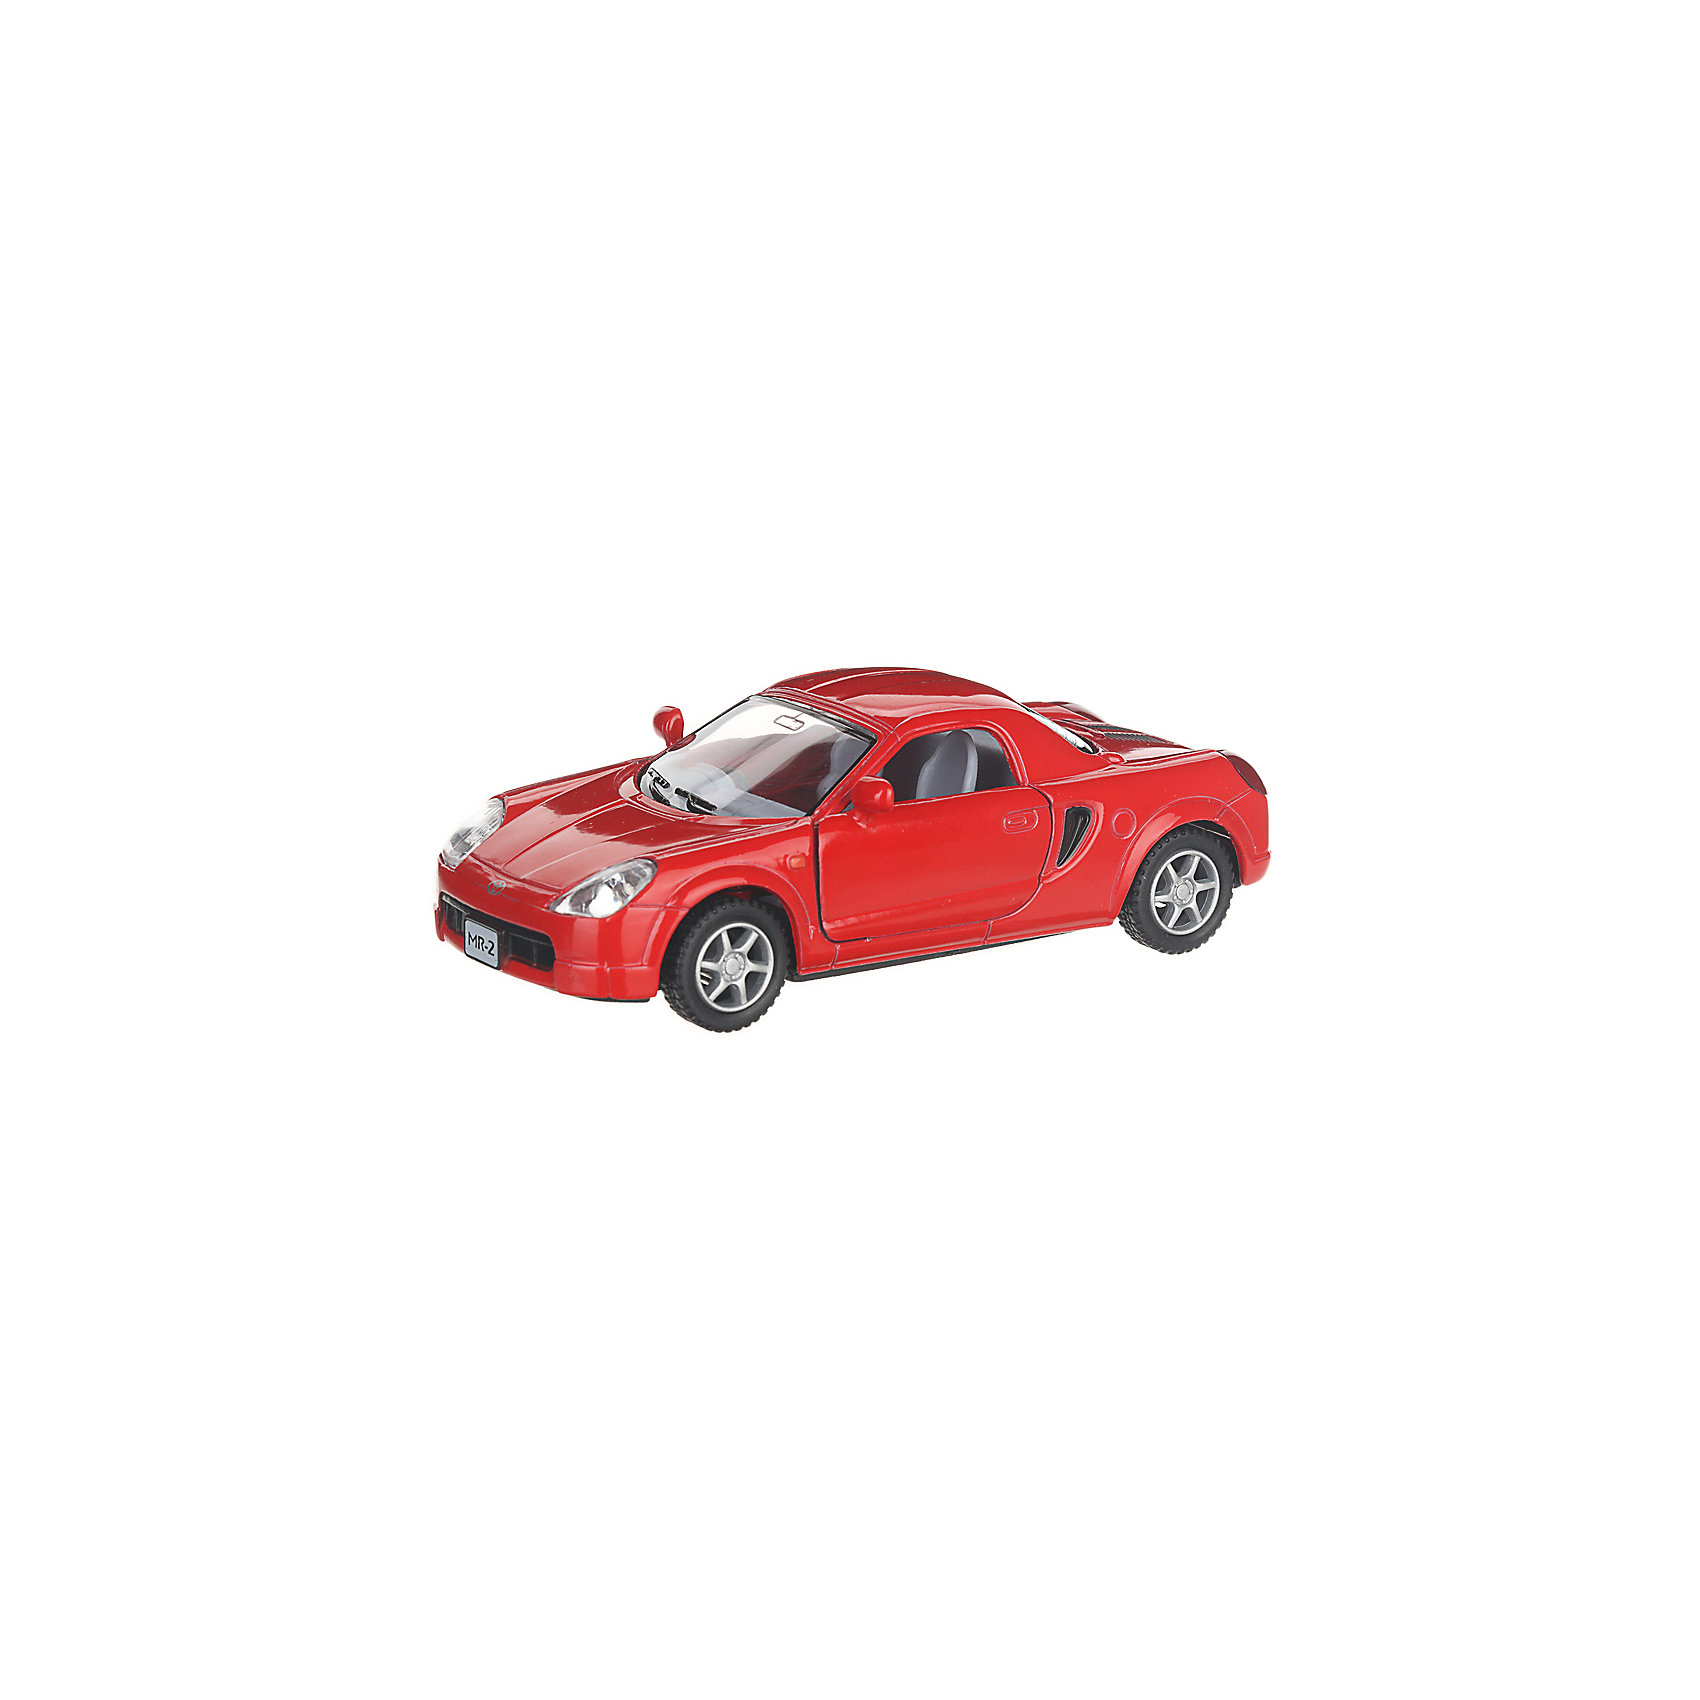 Коллекционная машинка Toyota MR2, красная Serinity Toys 13233469